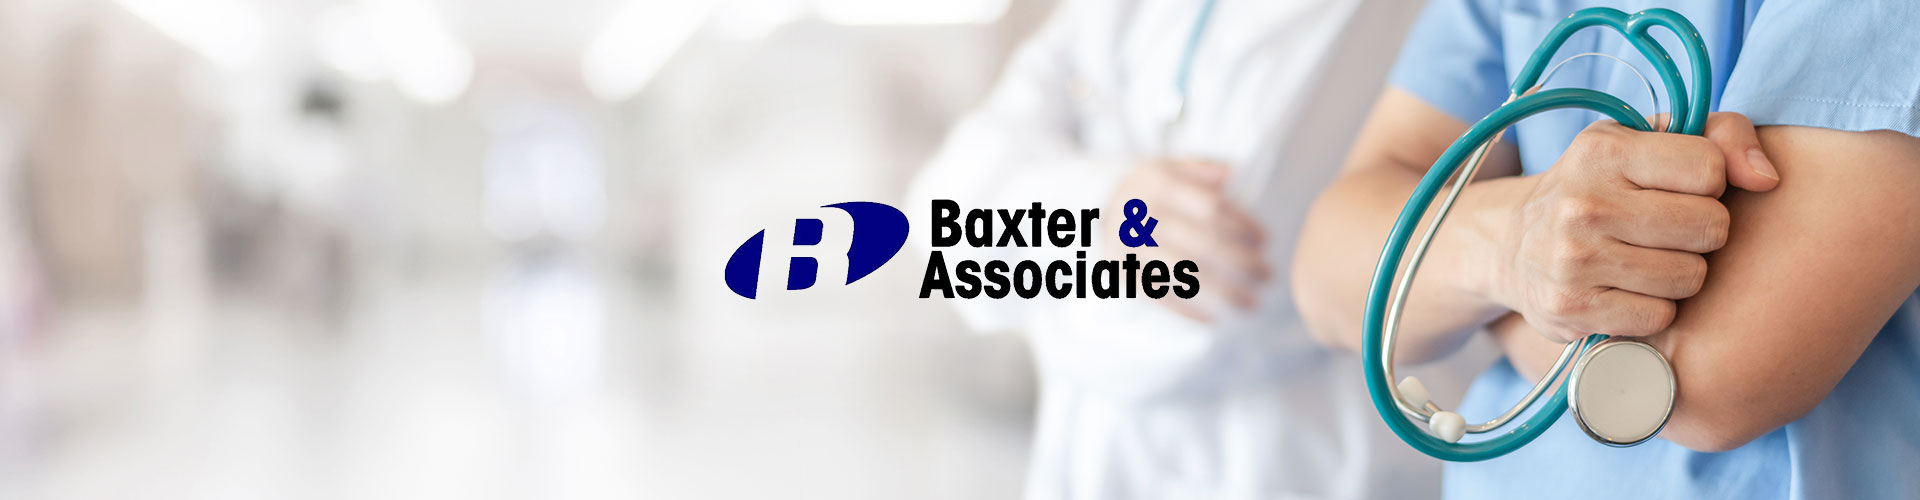 Baxter & Associates banner